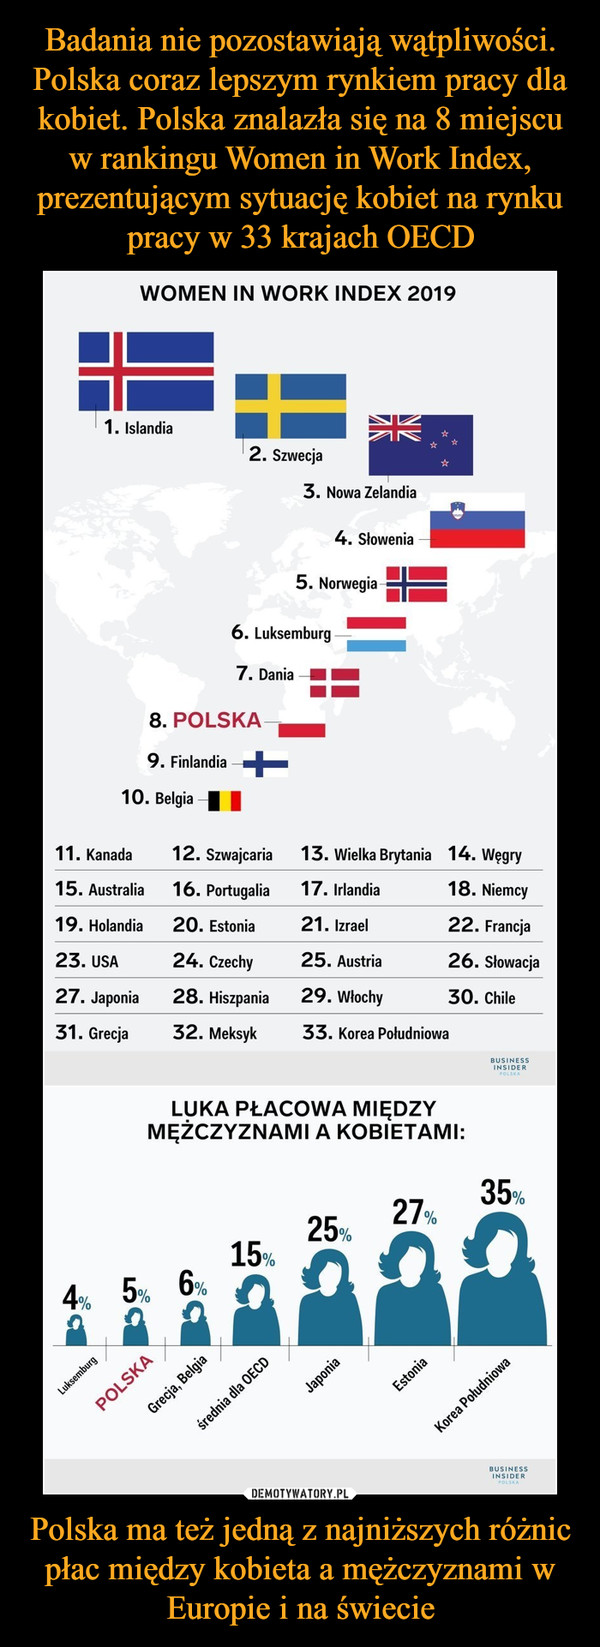 Polska ma też jedną z najniższych różnic płac między kobieta a mężczyznami w Europie i na świecie –  Badania nie pozostawiają wątpliwości.Polska coraz lepszym rynkiem pracy dlakobiet. Polska znalazła się na 8 miejscuw rankingu Women in Work Index,prezentujacym sytuacje kobiet na rynkupracy w 33 krajach OECDWOMEN IN WORK INDEX 20191. Islandia2. Szwecja3. Nowa Zelandia4. Słowenia5. Norwegia6. Luksemburg7. Dania8. POLSKA9. Finlandia10. BelgiaI11. Kanada15. Australia19. Holandia23. USA27. Japonia31. Grecja12. Szwajcaria16. Portugalia20. Estonia24. Czechy28. Hiszpania32. Meksyk13. Wielka Brytania 14. Wegry17. Irlandia21. Izrael25. Austria29. Włochy33. Korea Poludniowa18. Niemcy22. Francia26. Słowacja30. ChileLUKA PŁACOWA MIĘDZYMĘZCZYZNAMI A KOBIETAMI:35,27,25,15,4,5,6, 。USINESSINSIDER